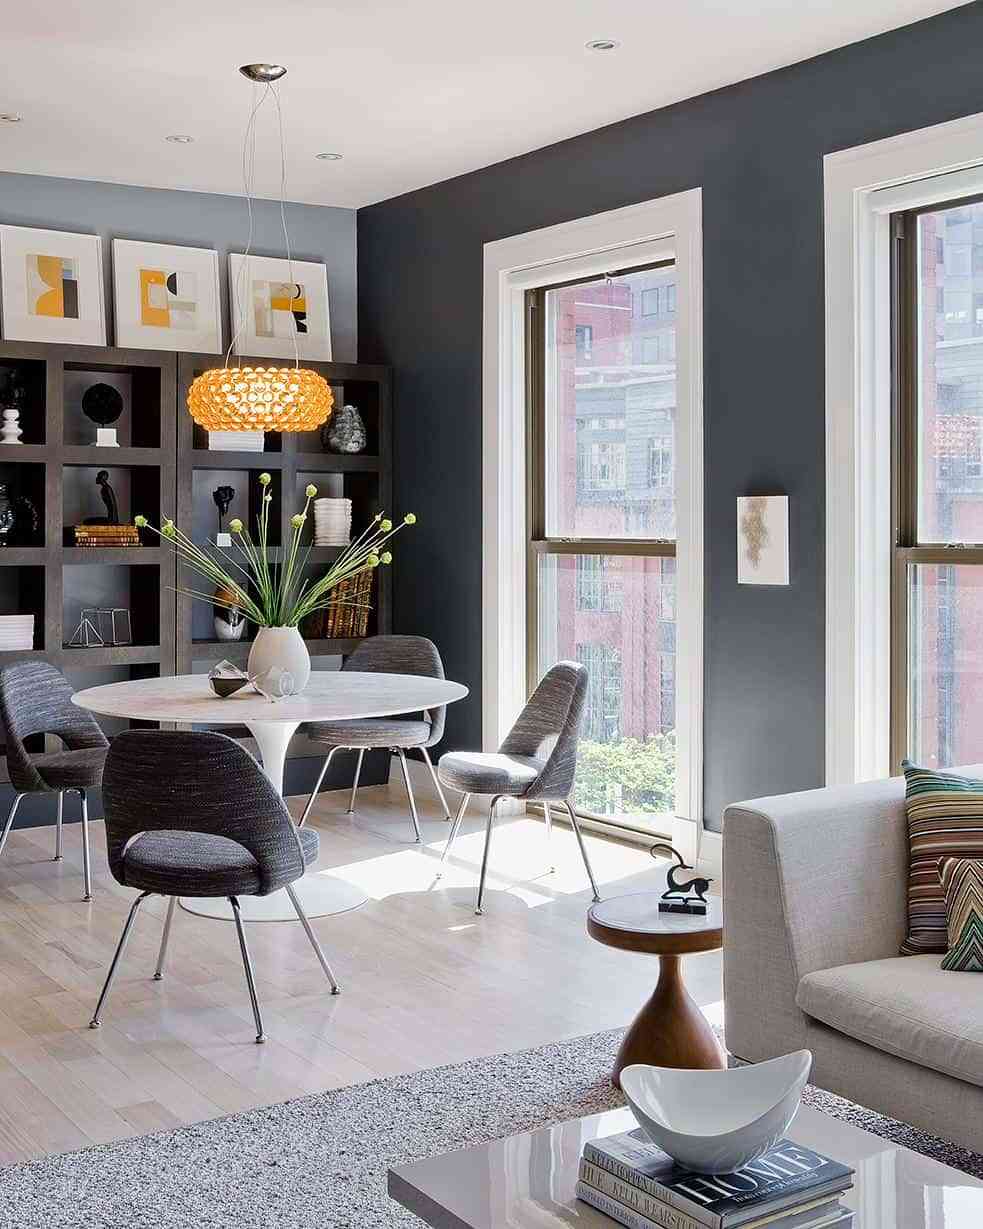 Imagen de una sala combinada con sofá gris marengo y accesorios decorativos en tono dorado